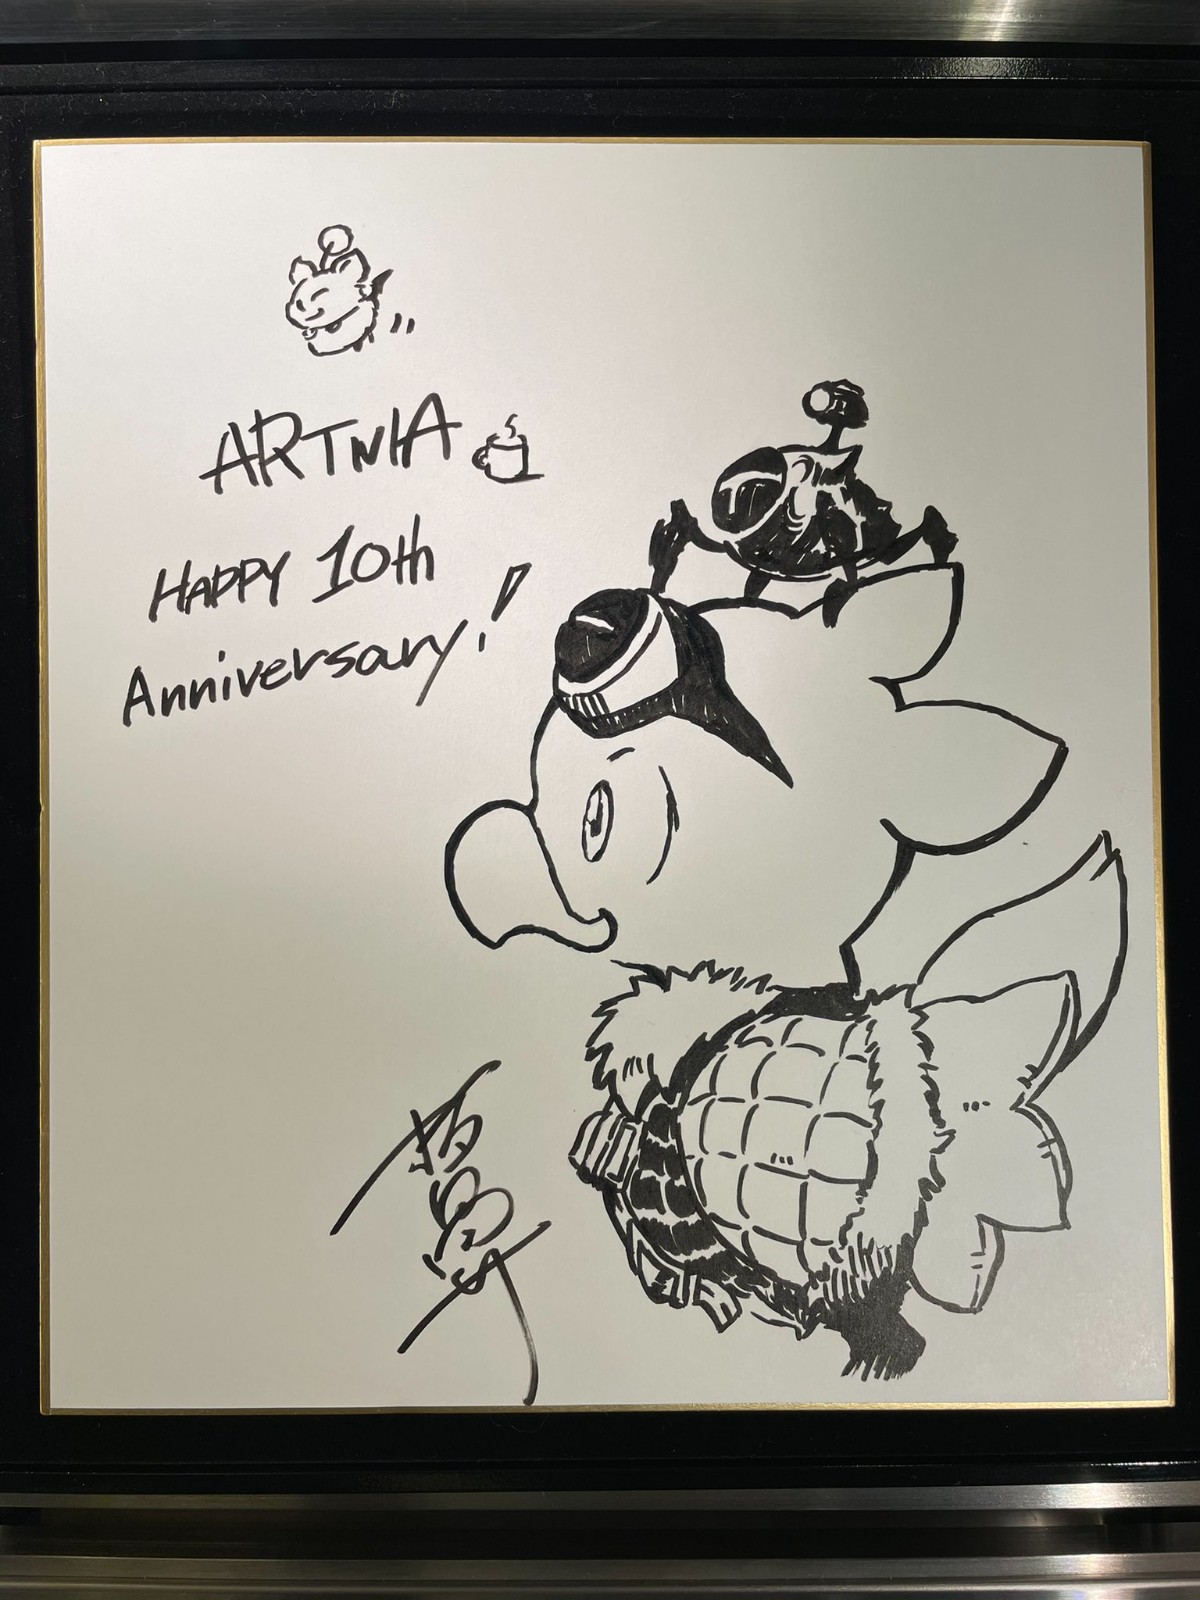 SE咖啡厅Artnia十周年店庆 野村哲也发布祝贺作品